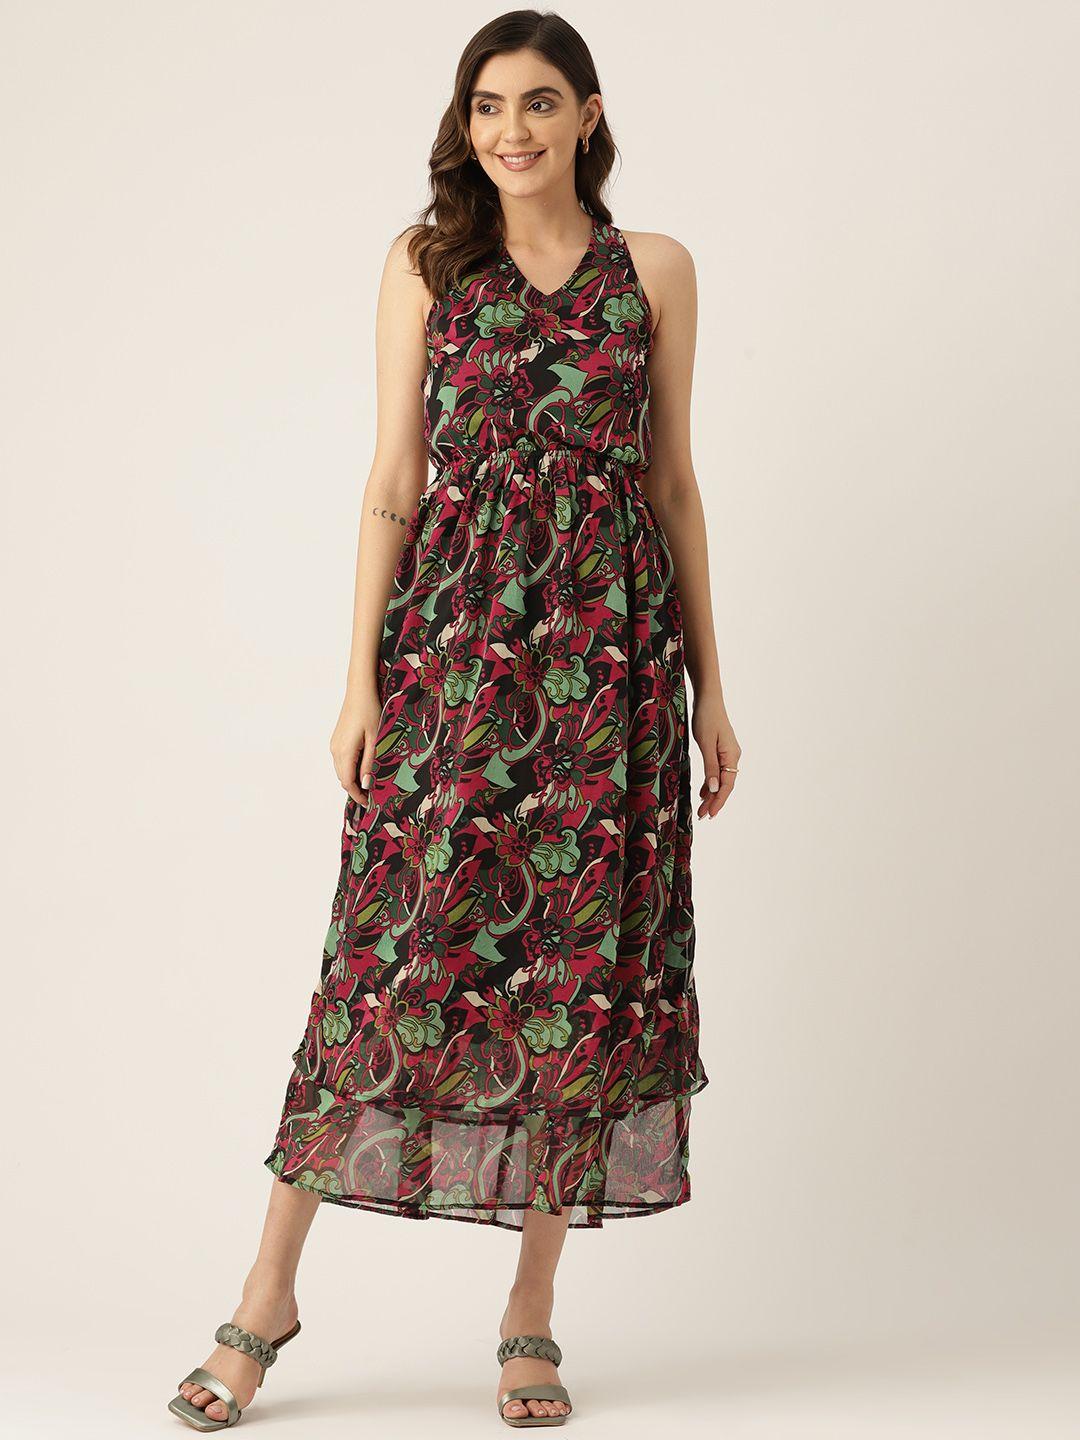 label-regalia-green-&-maroon-floral-print-chiffon-a-line-maxi-dress